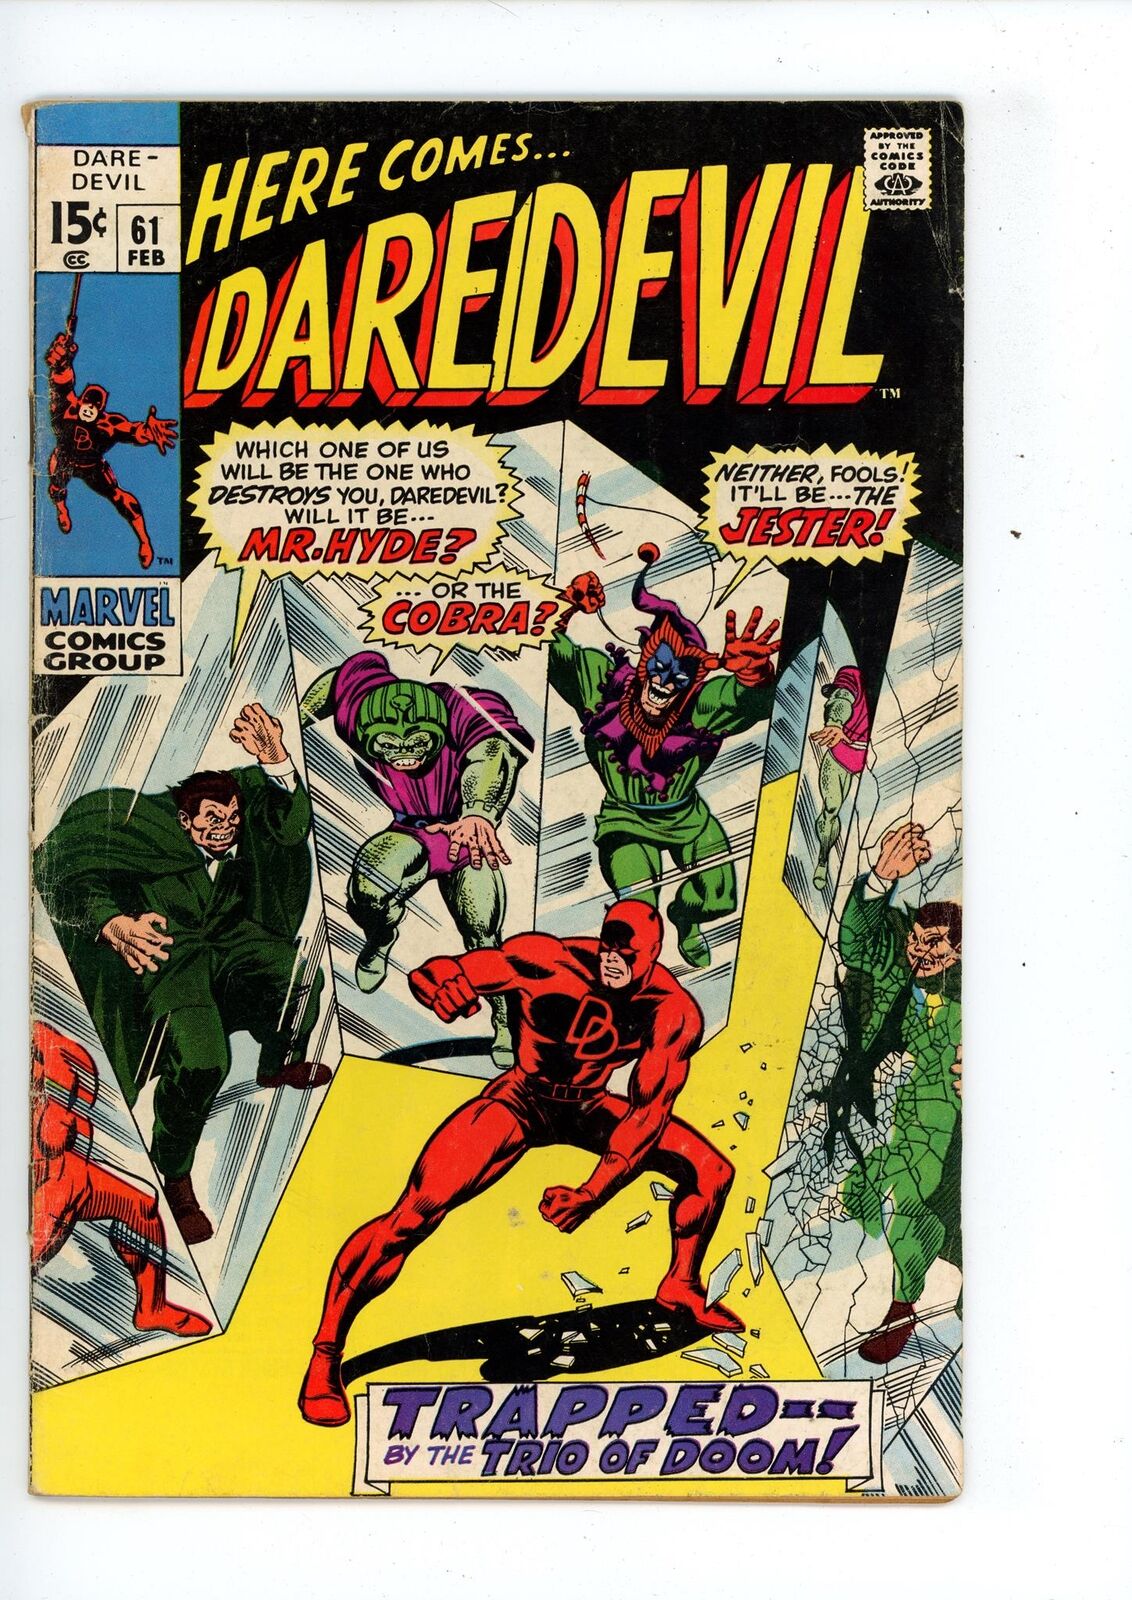 Daredevil #61 (1970) Daredevil Marvel Comics